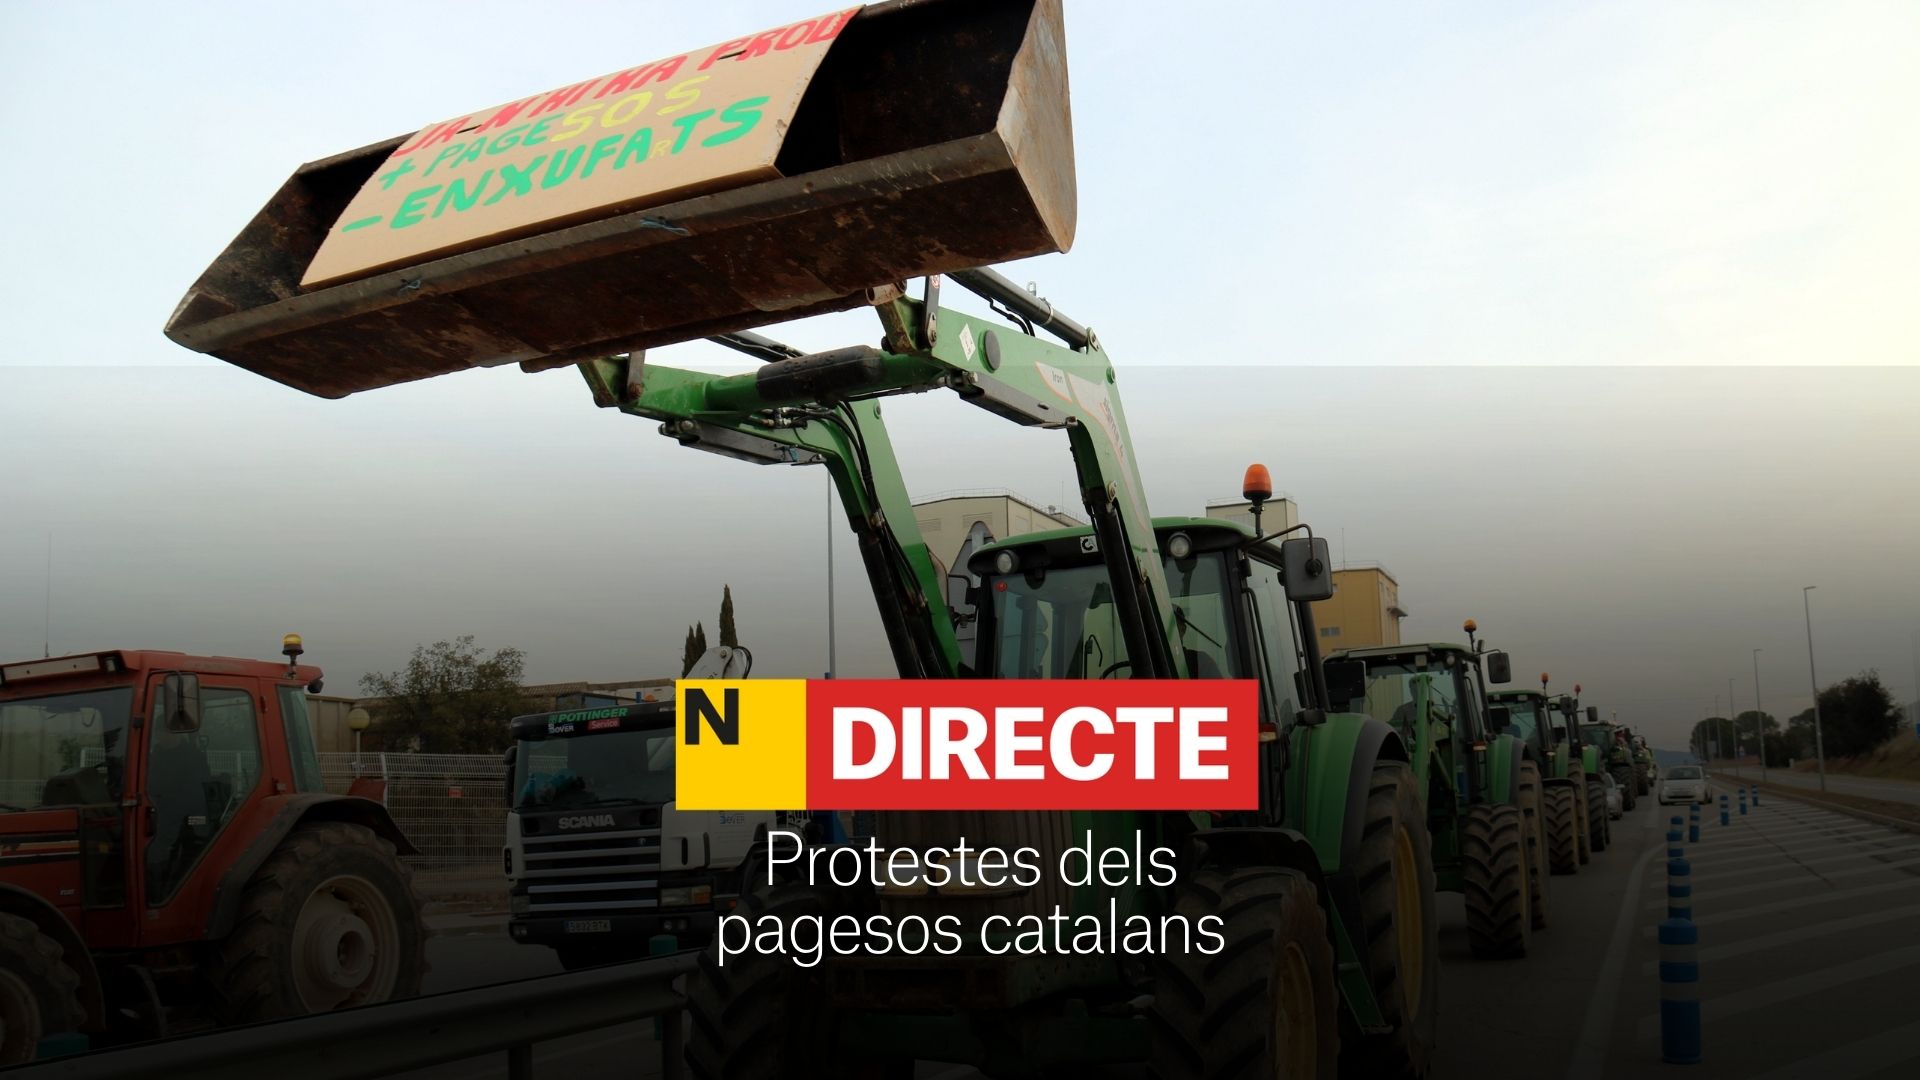 Huelga de agricultores en Catalunya y Barcelona: carreteras cortadas hoy, DIRECTO